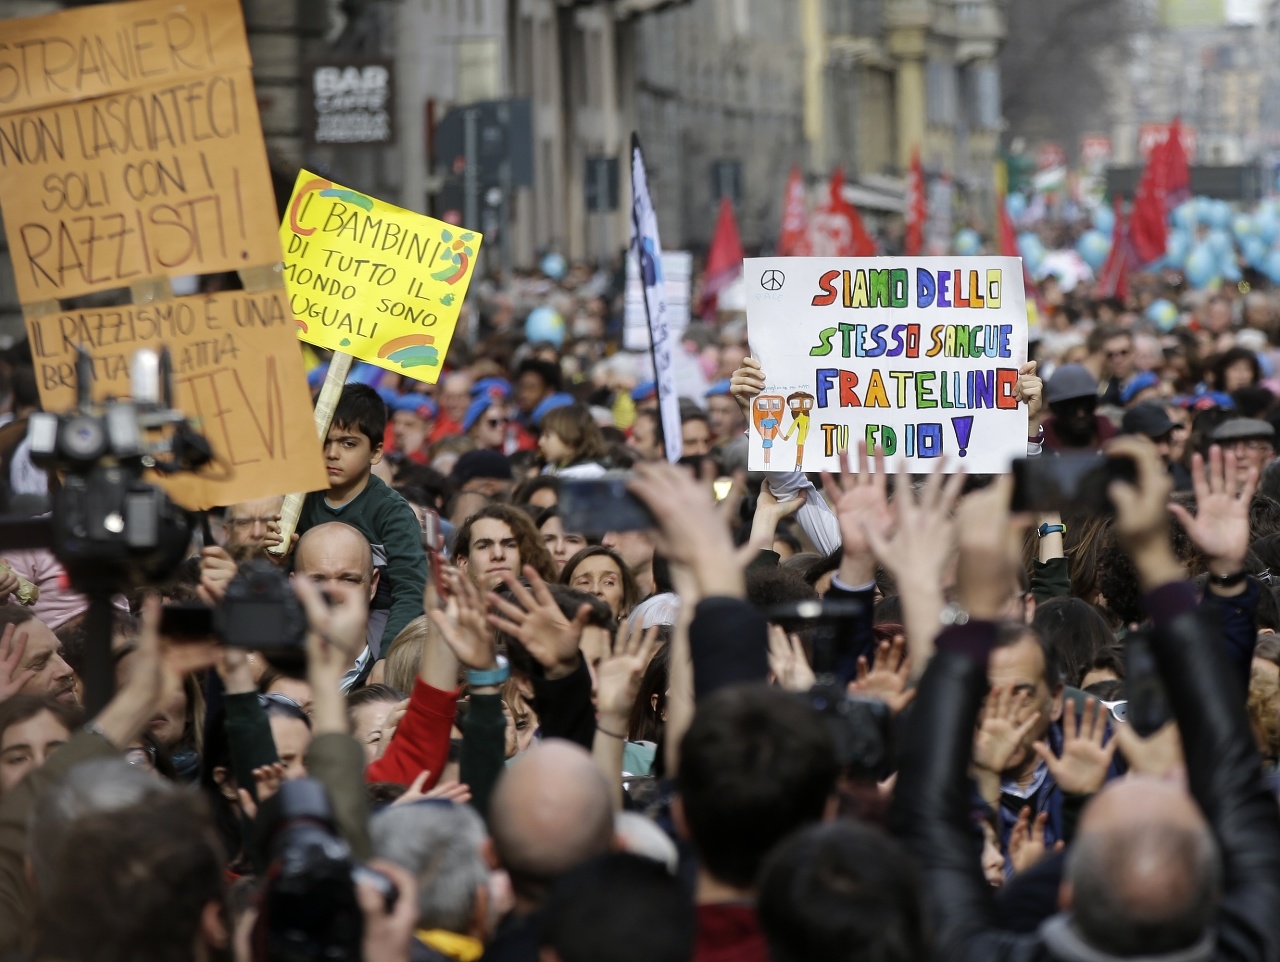 Desaťtisíce ľudí pochodovali v sobotu v Miláne na protest proti politike populistickej vlády.